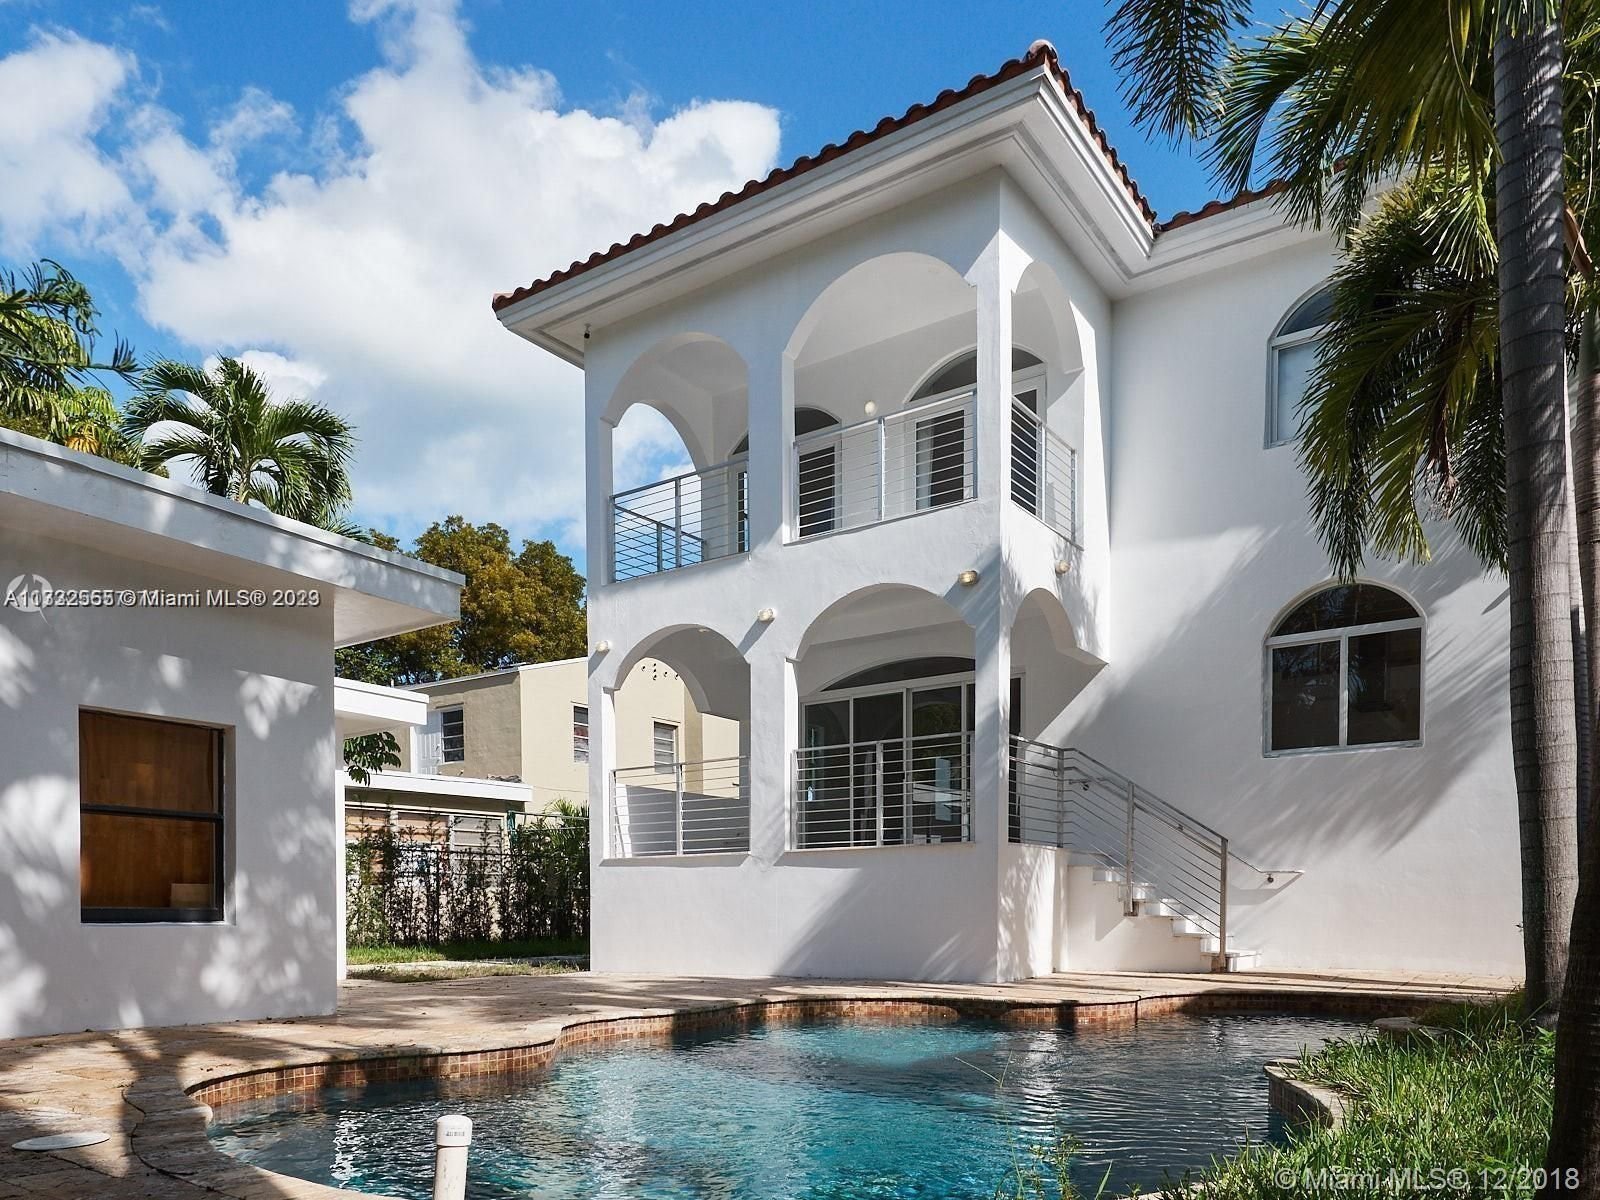 Real estate property located at 2210 Alton Rd, Miami-Dade County, Miami Beach, FL